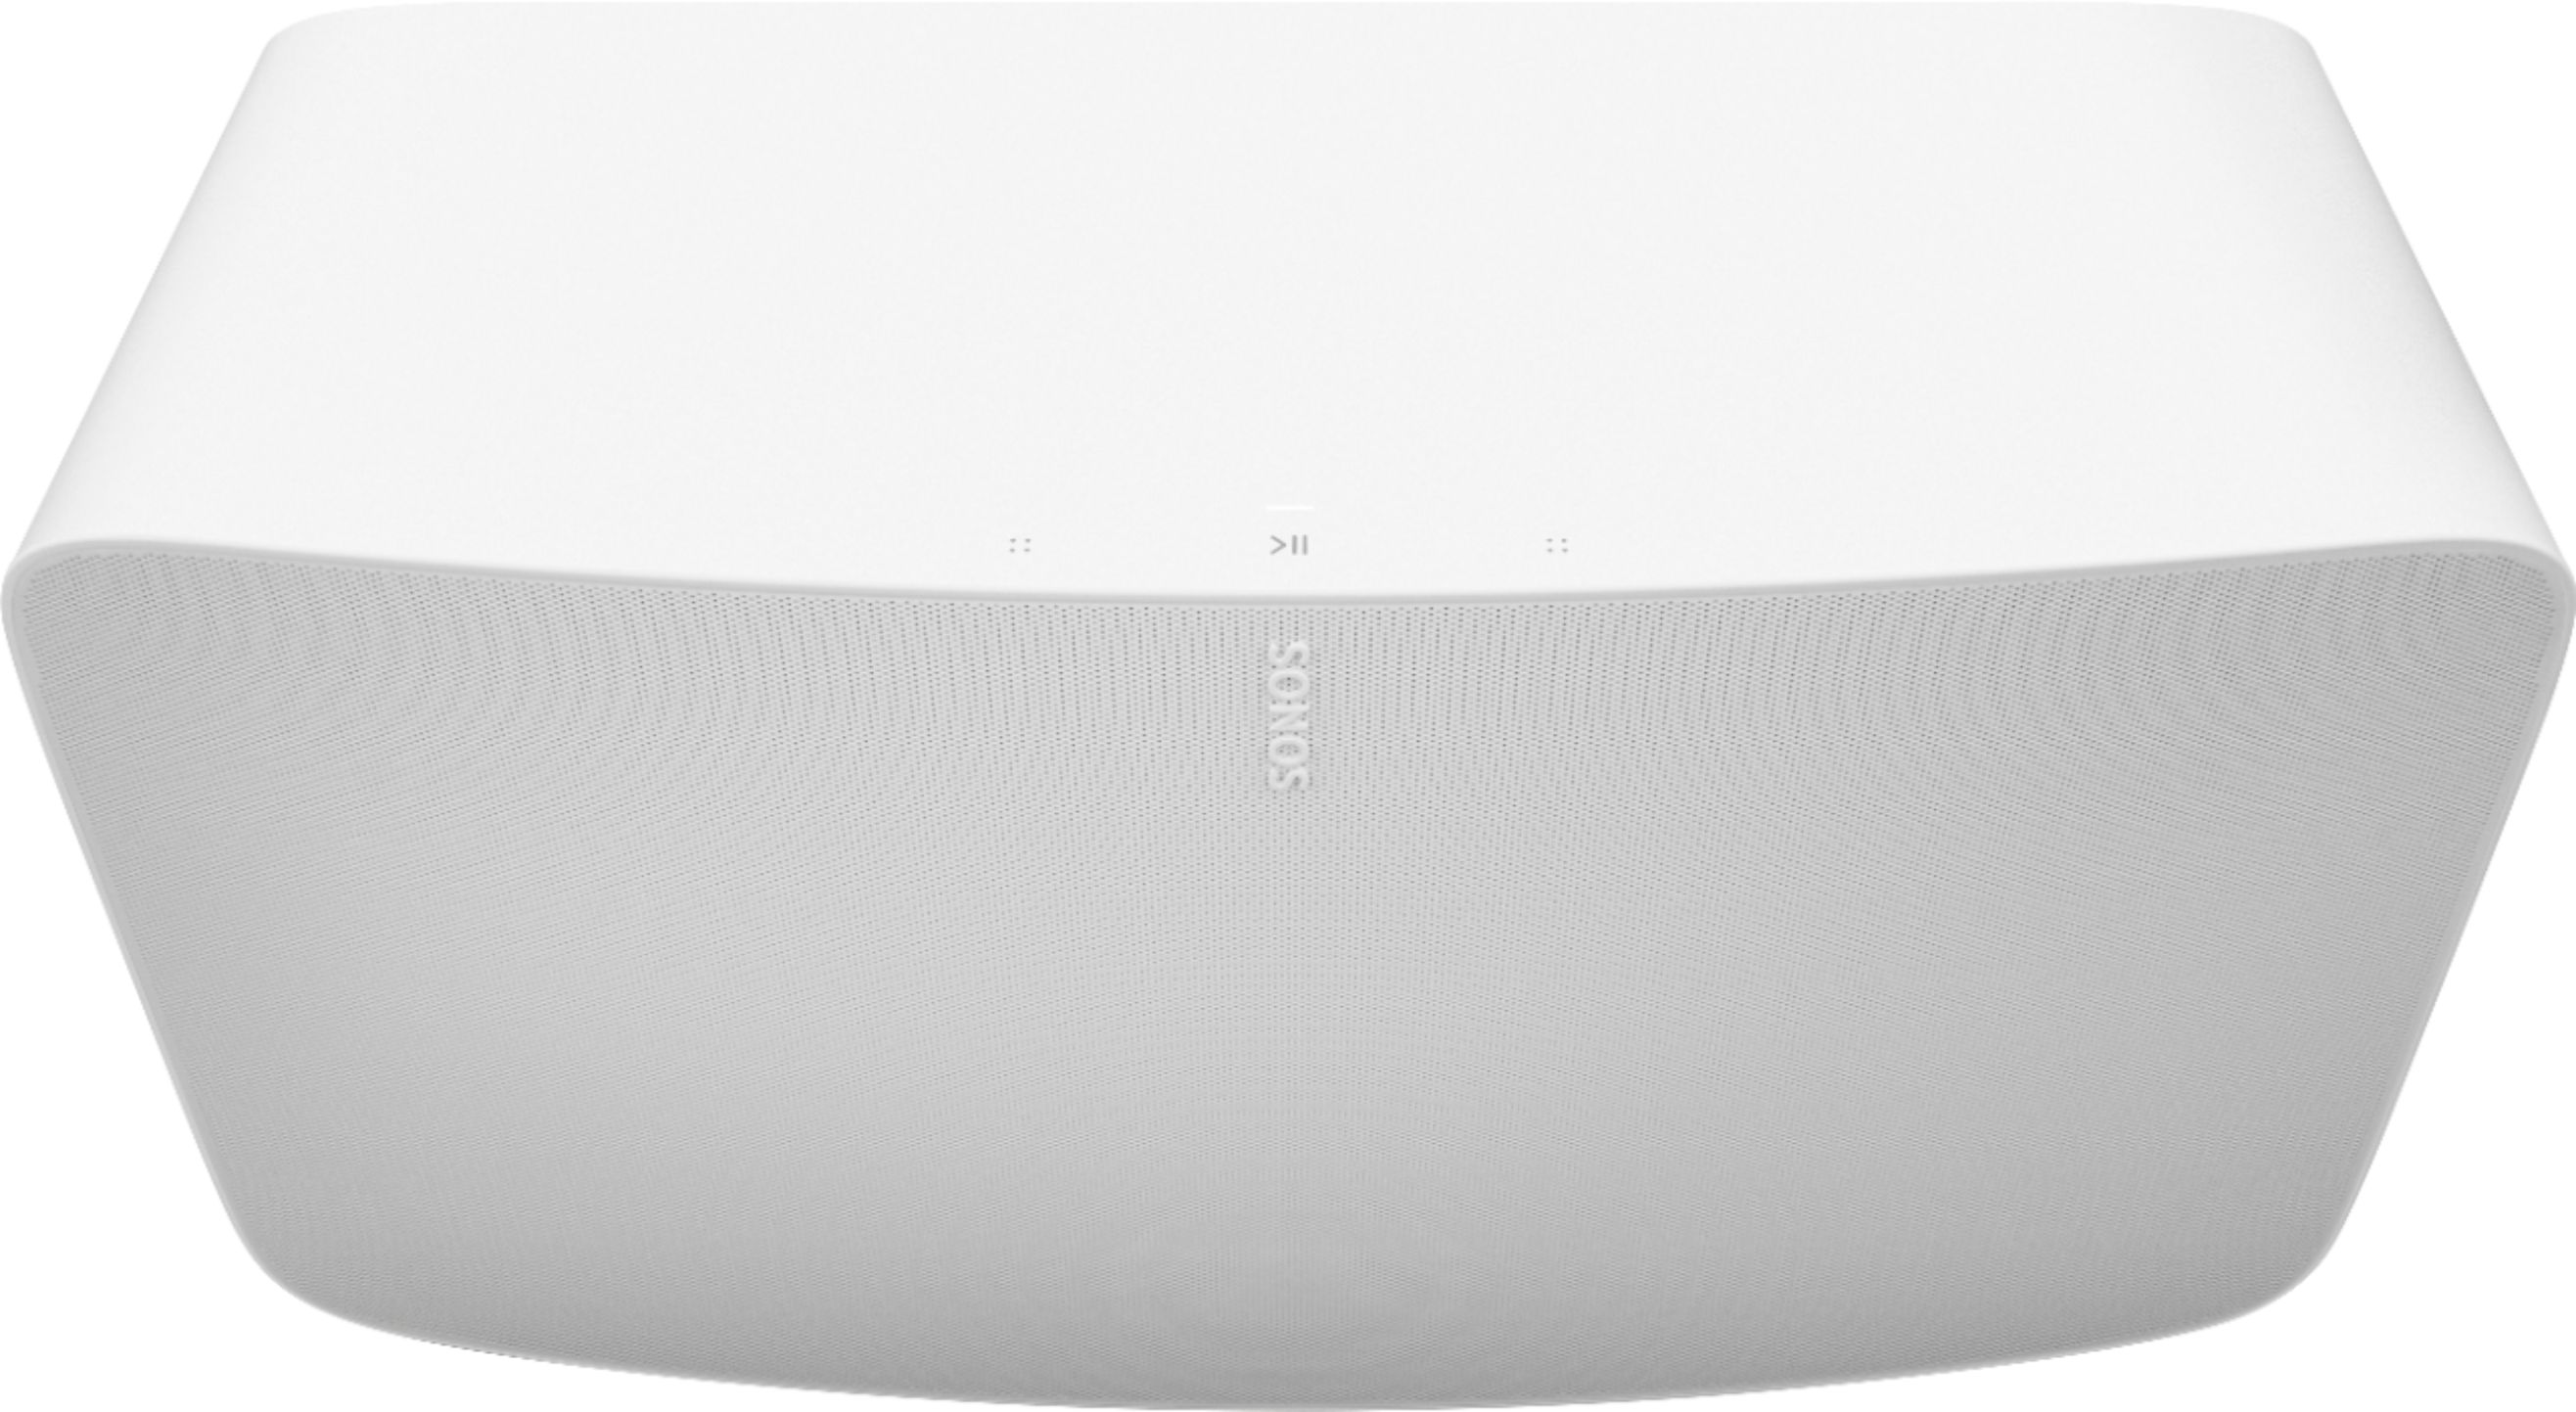 Sonos Five Wireless Smart Speaker White FIVE1US1 - Best Buy